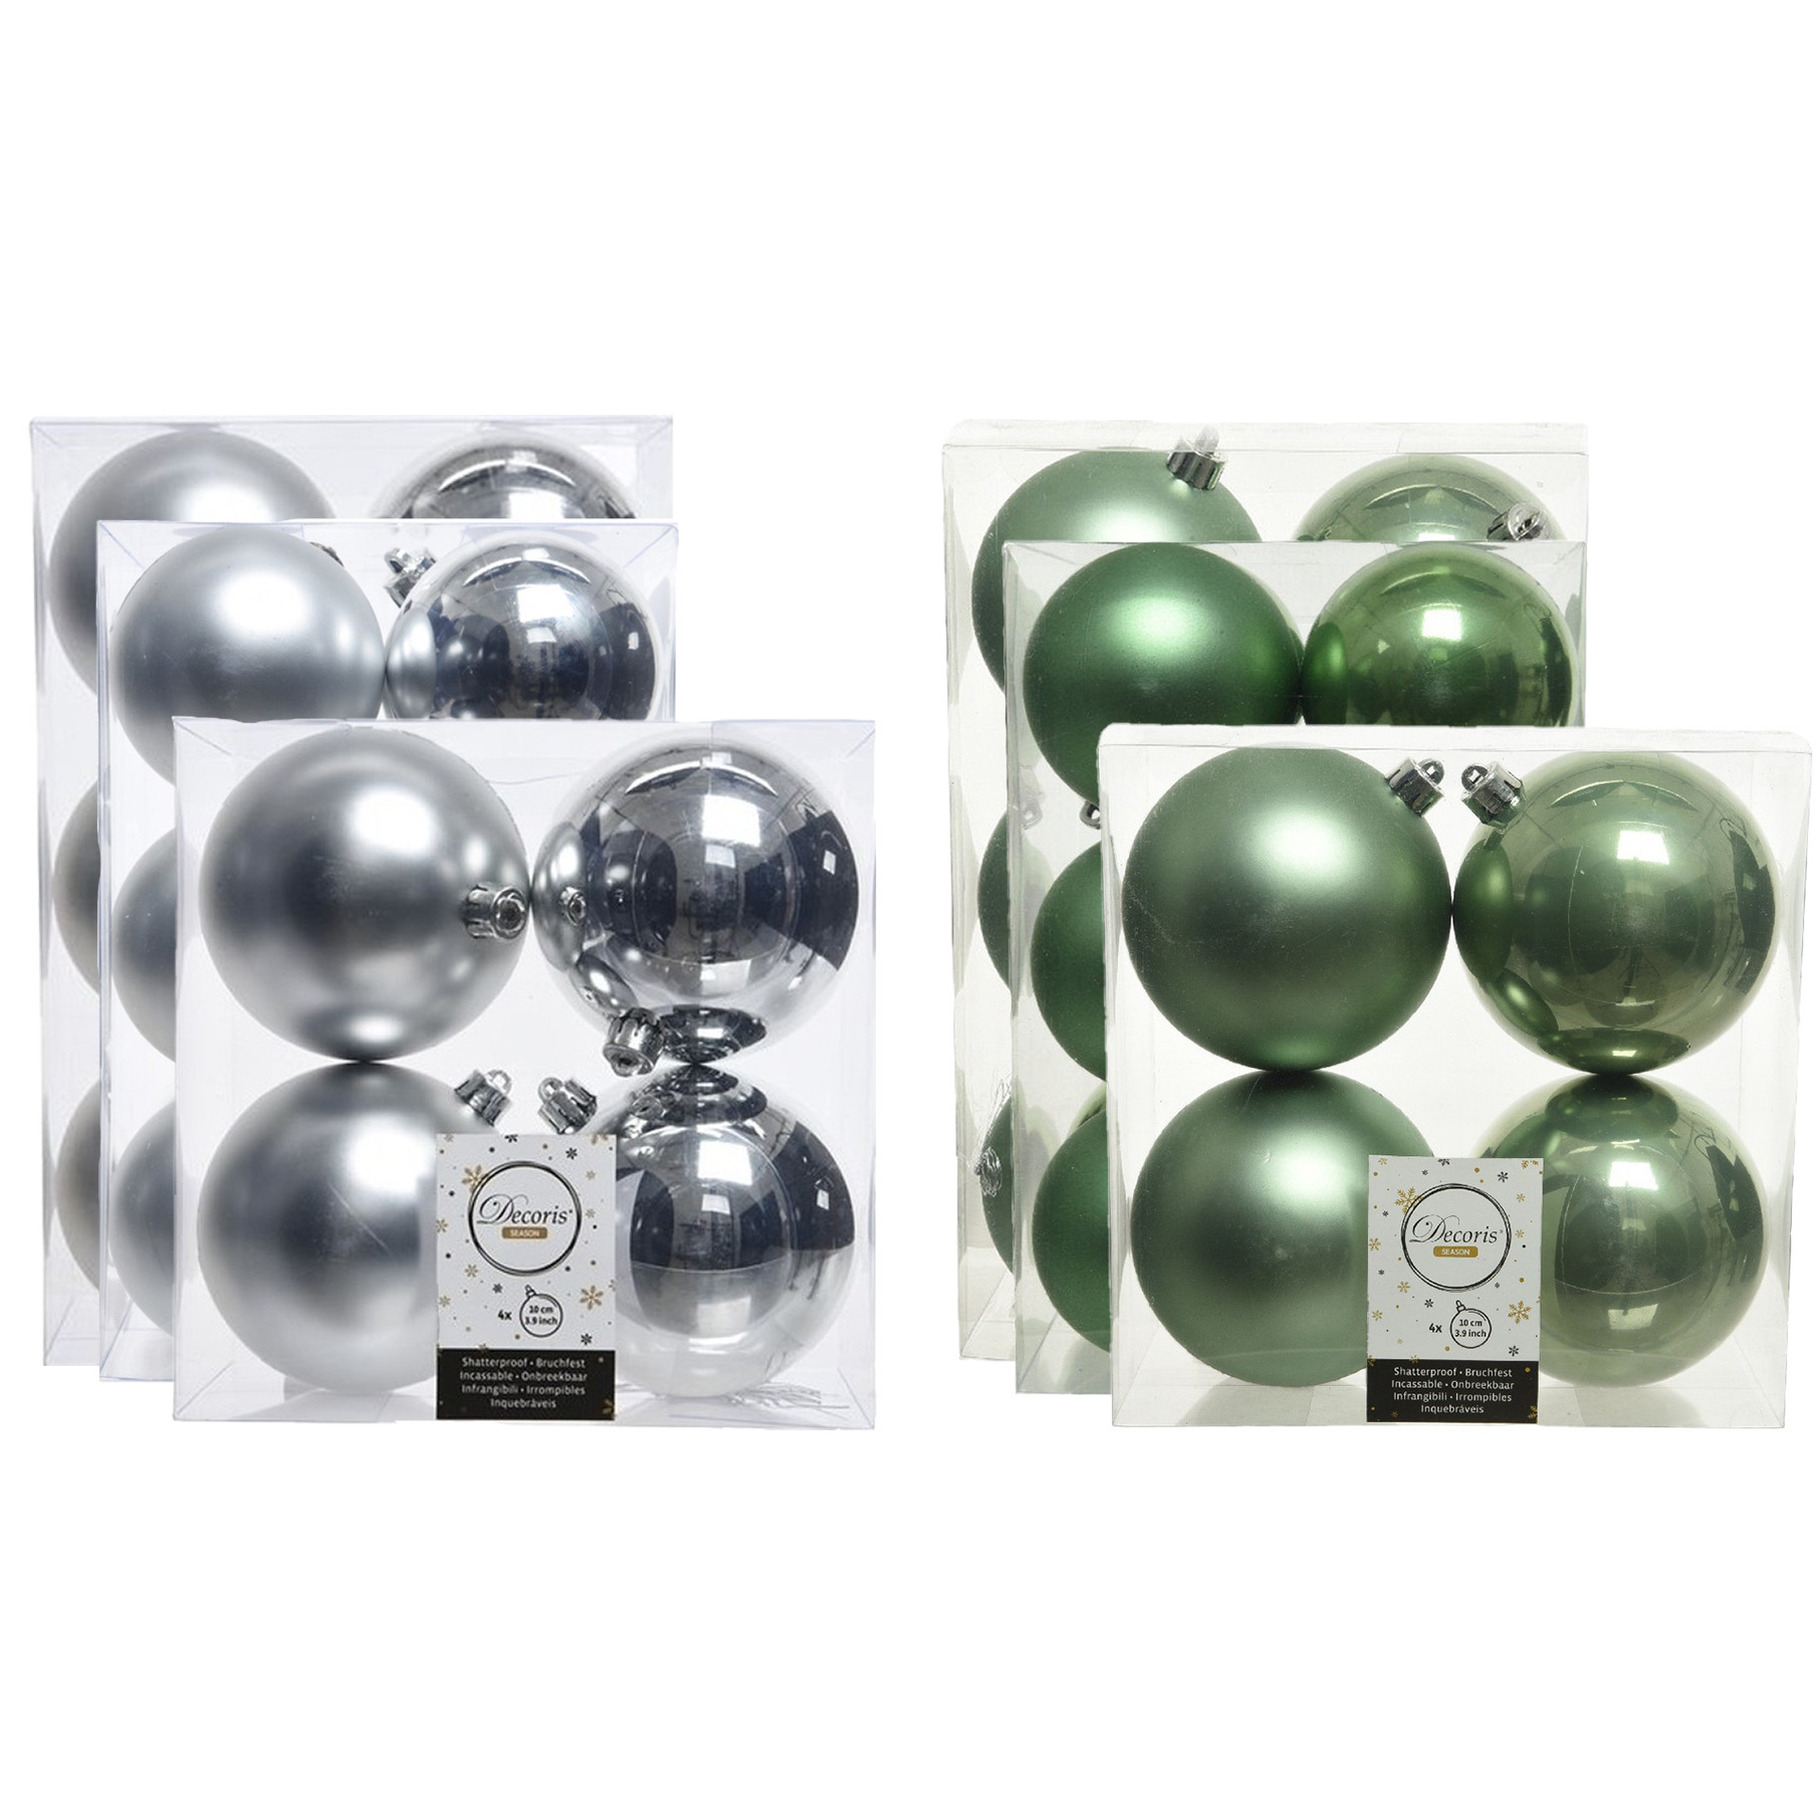 Kerstversiering kunststof kerstballen mix salie groen-zilver 6-8-10 cm pakket van 44x stuks